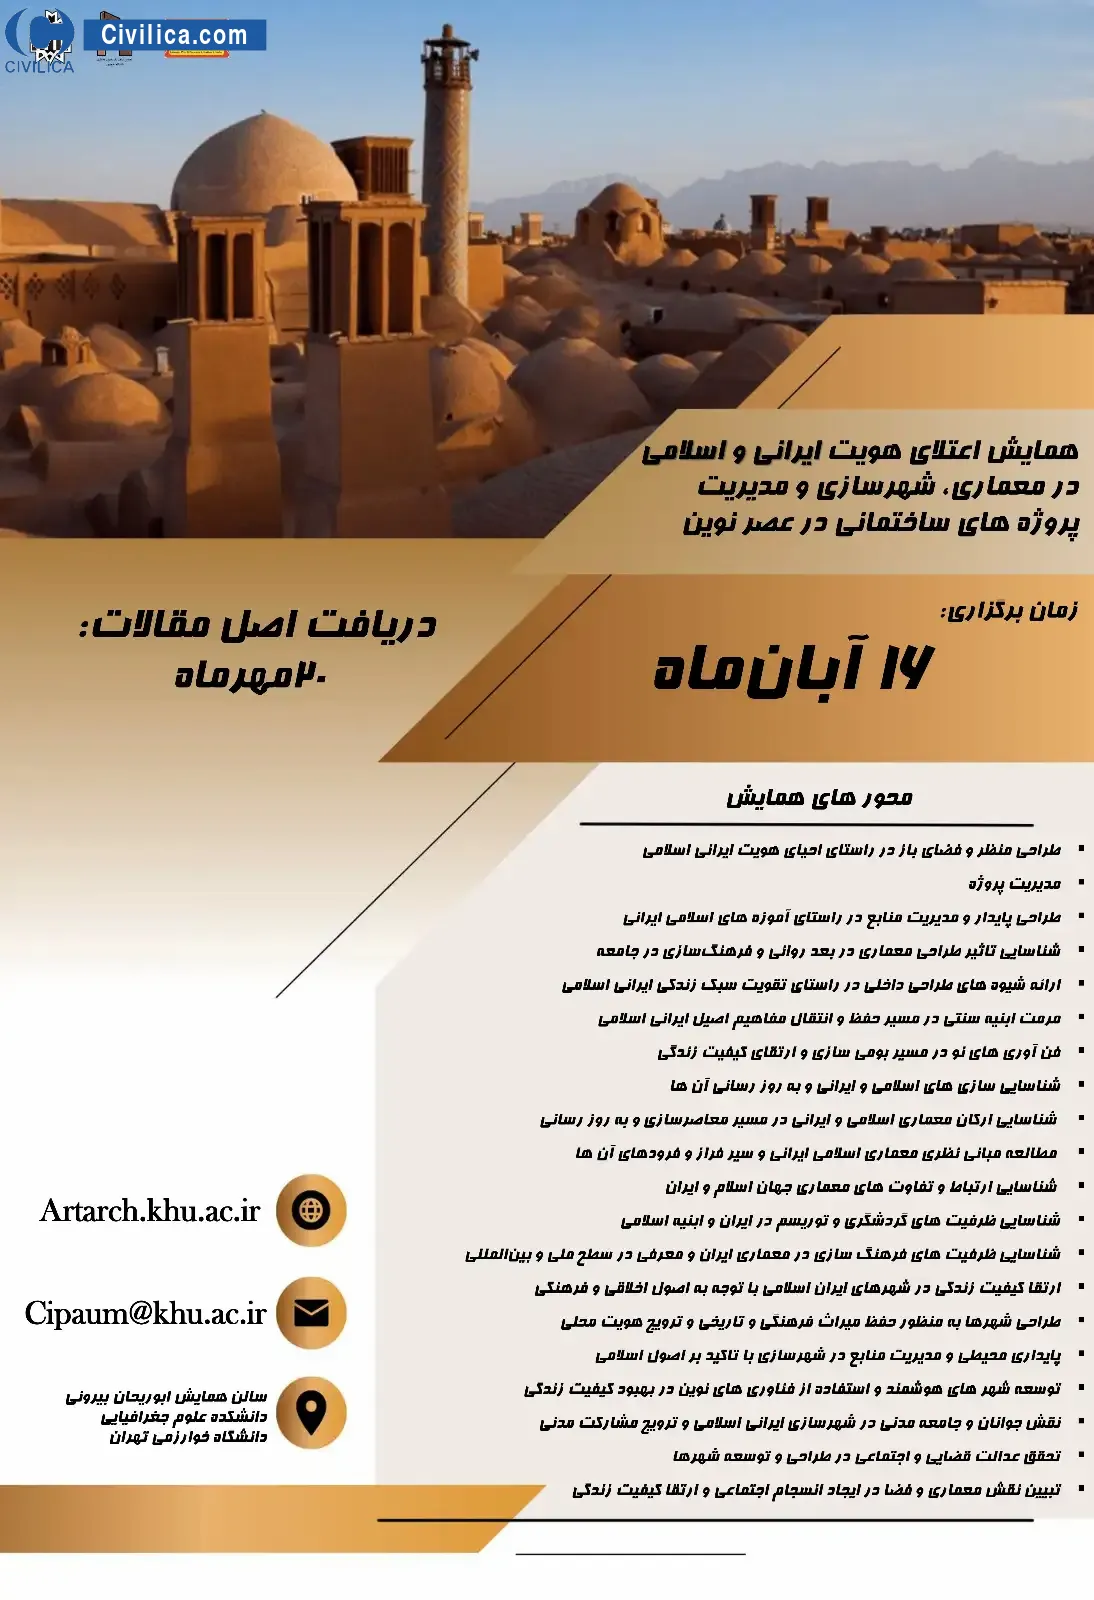 همایش اعتلای هویت ایرانی و اسلامی در معماری، شهرسازی و مدیریت پروژه های ساختمانی در عصر نوین